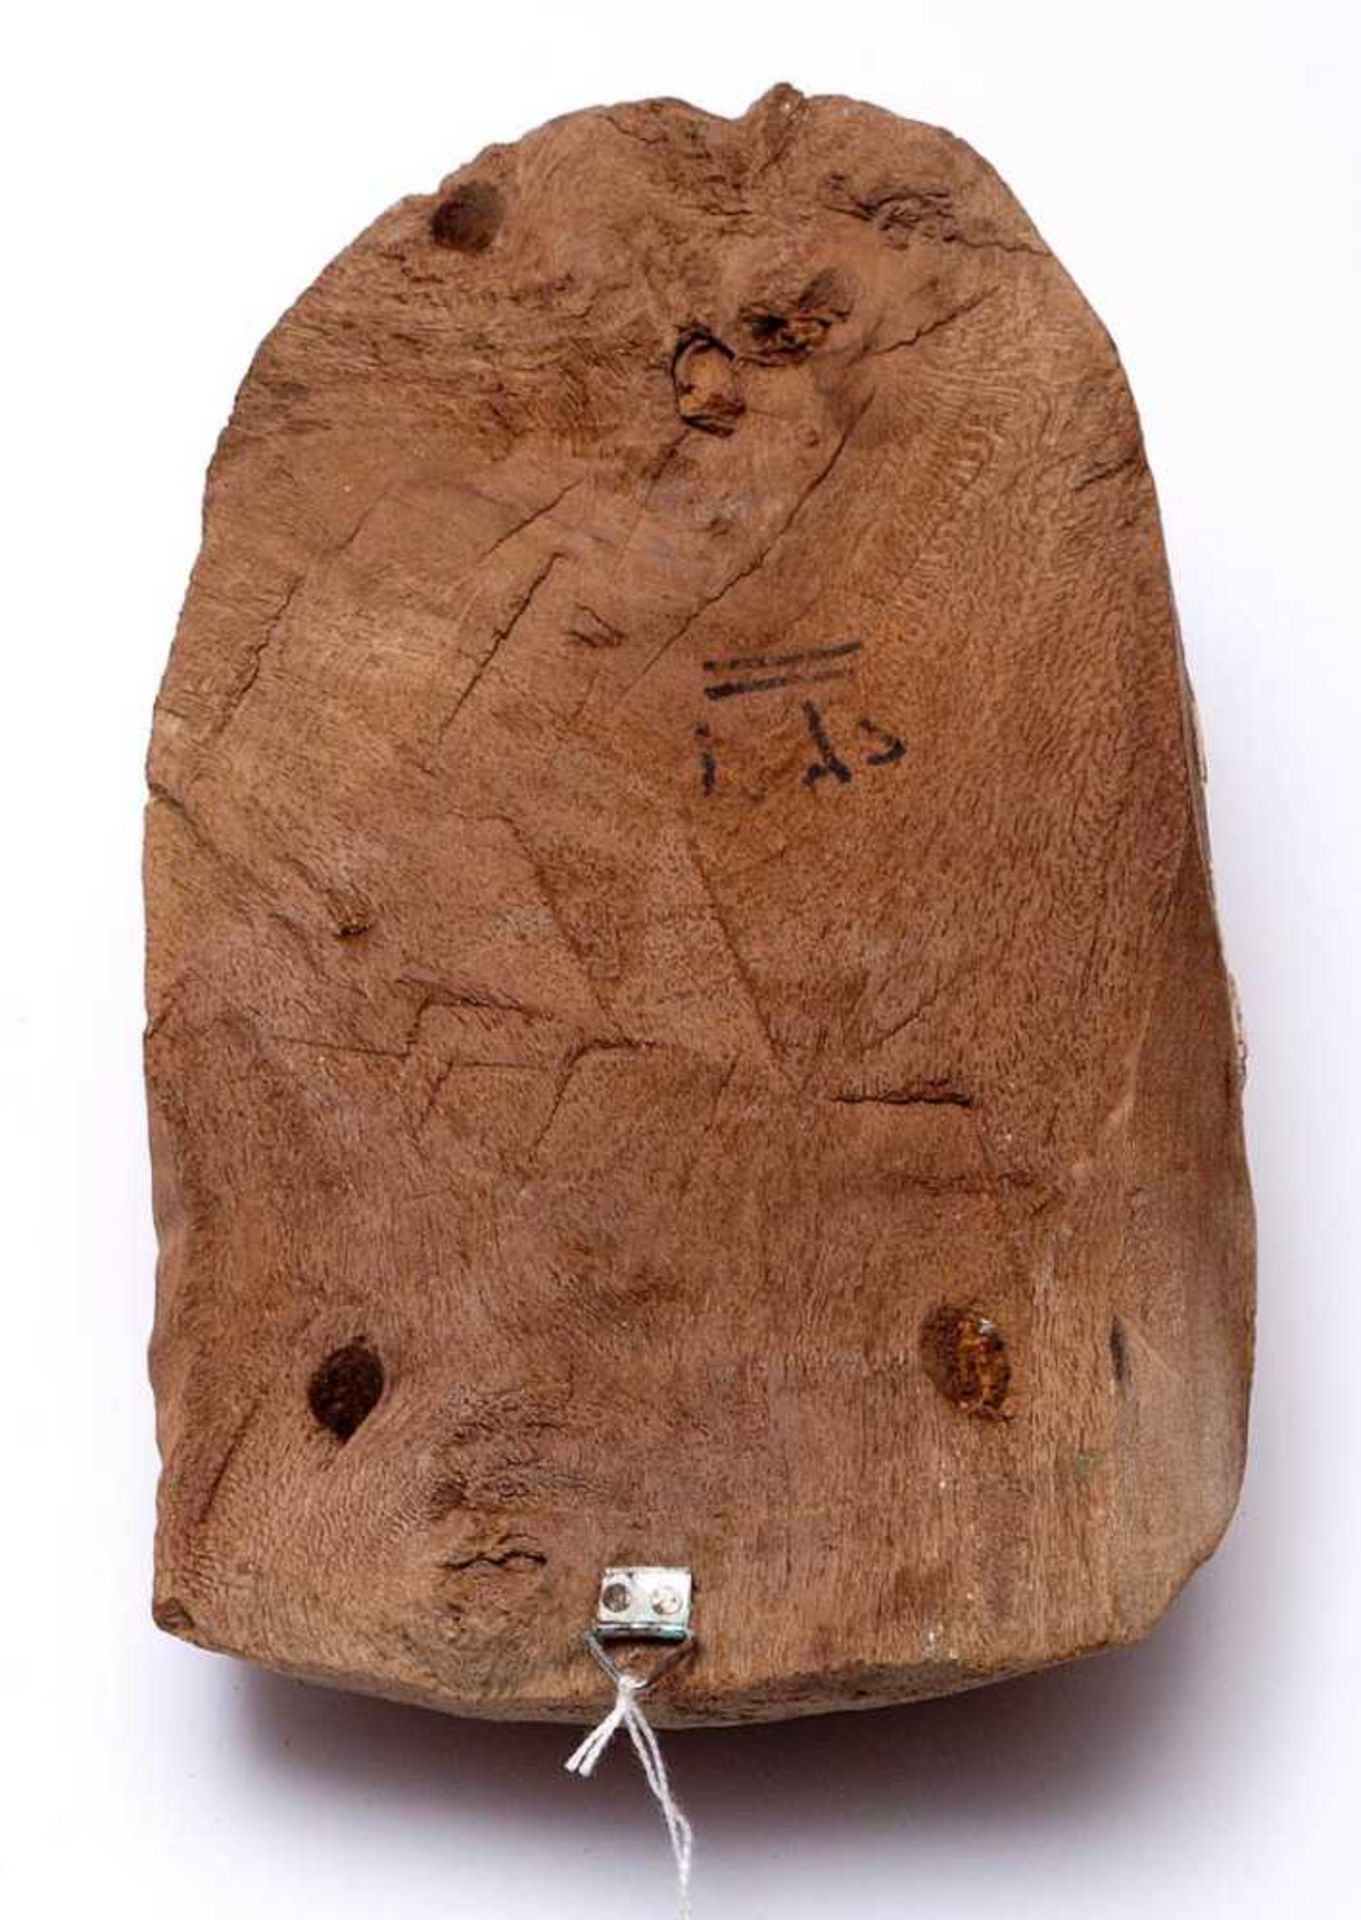 Sarkophagmaske, wohl ÄgyptenFarbige Malerei über Stuck auf Holz. H.22,5cm. - Bild 6 aus 6